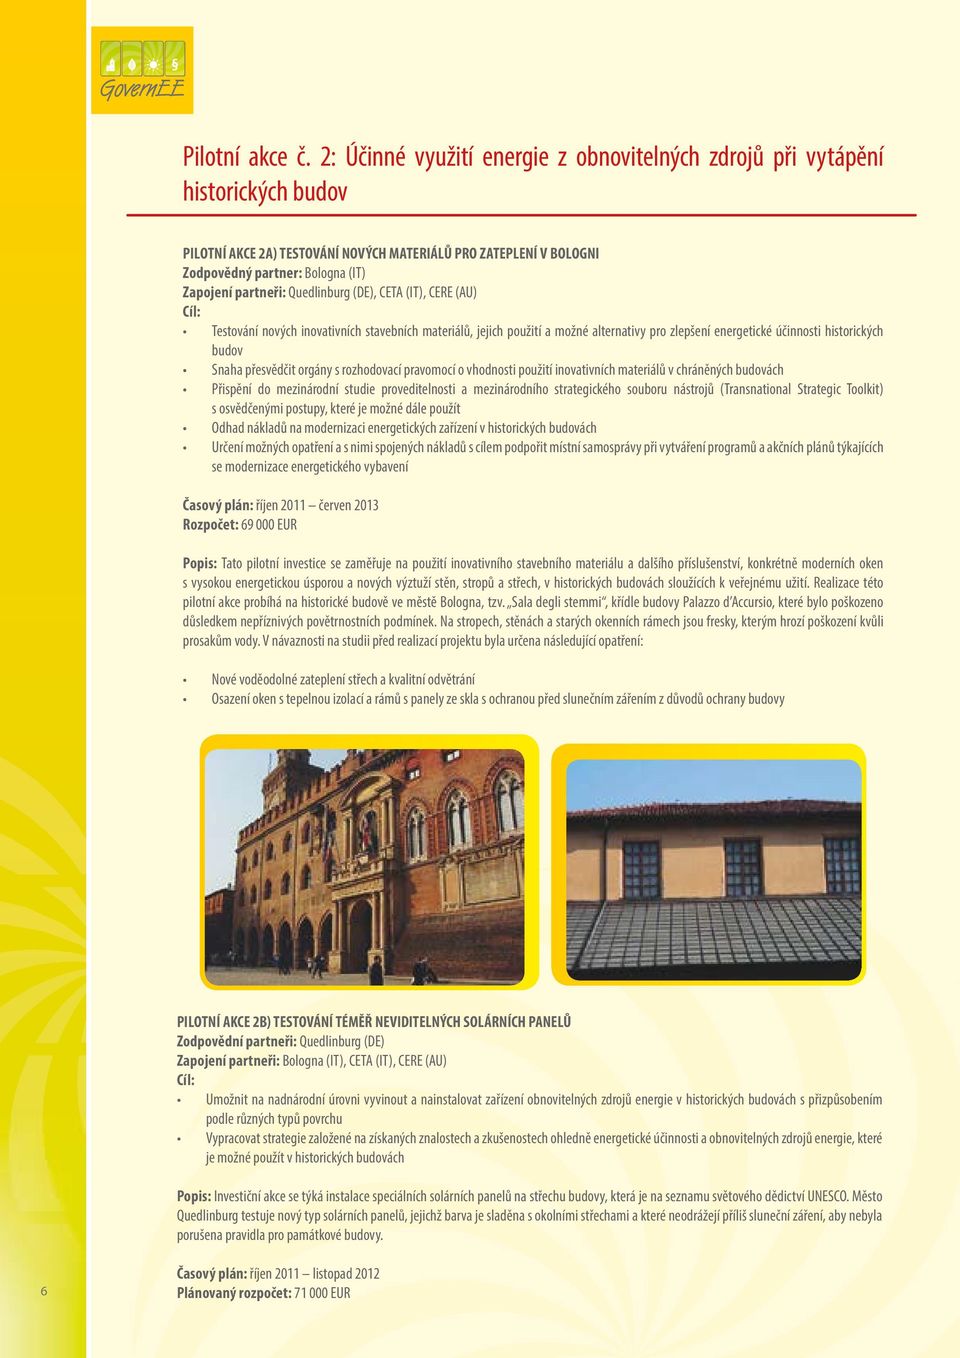 partneři: Quedlinburg (DE), CETA (IT), CERE (AU) Cíl: Testování nových inovativních stavebních materiálů, jejich použití a možné alternativy pro zlepšení energetické účinnosti historických budov